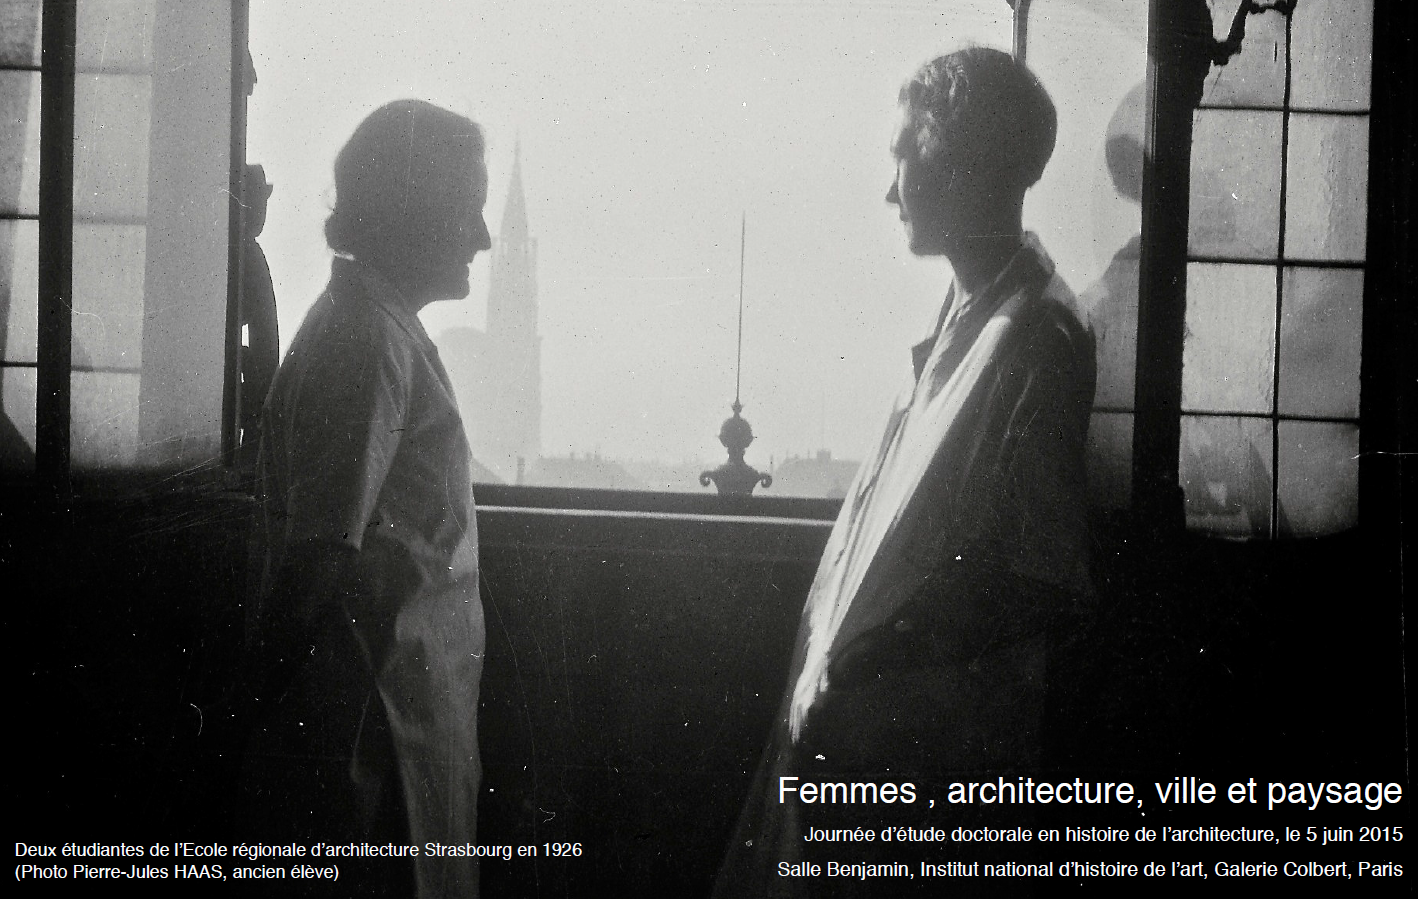 05/06/15 - Femmes, architecture, ville et paysage